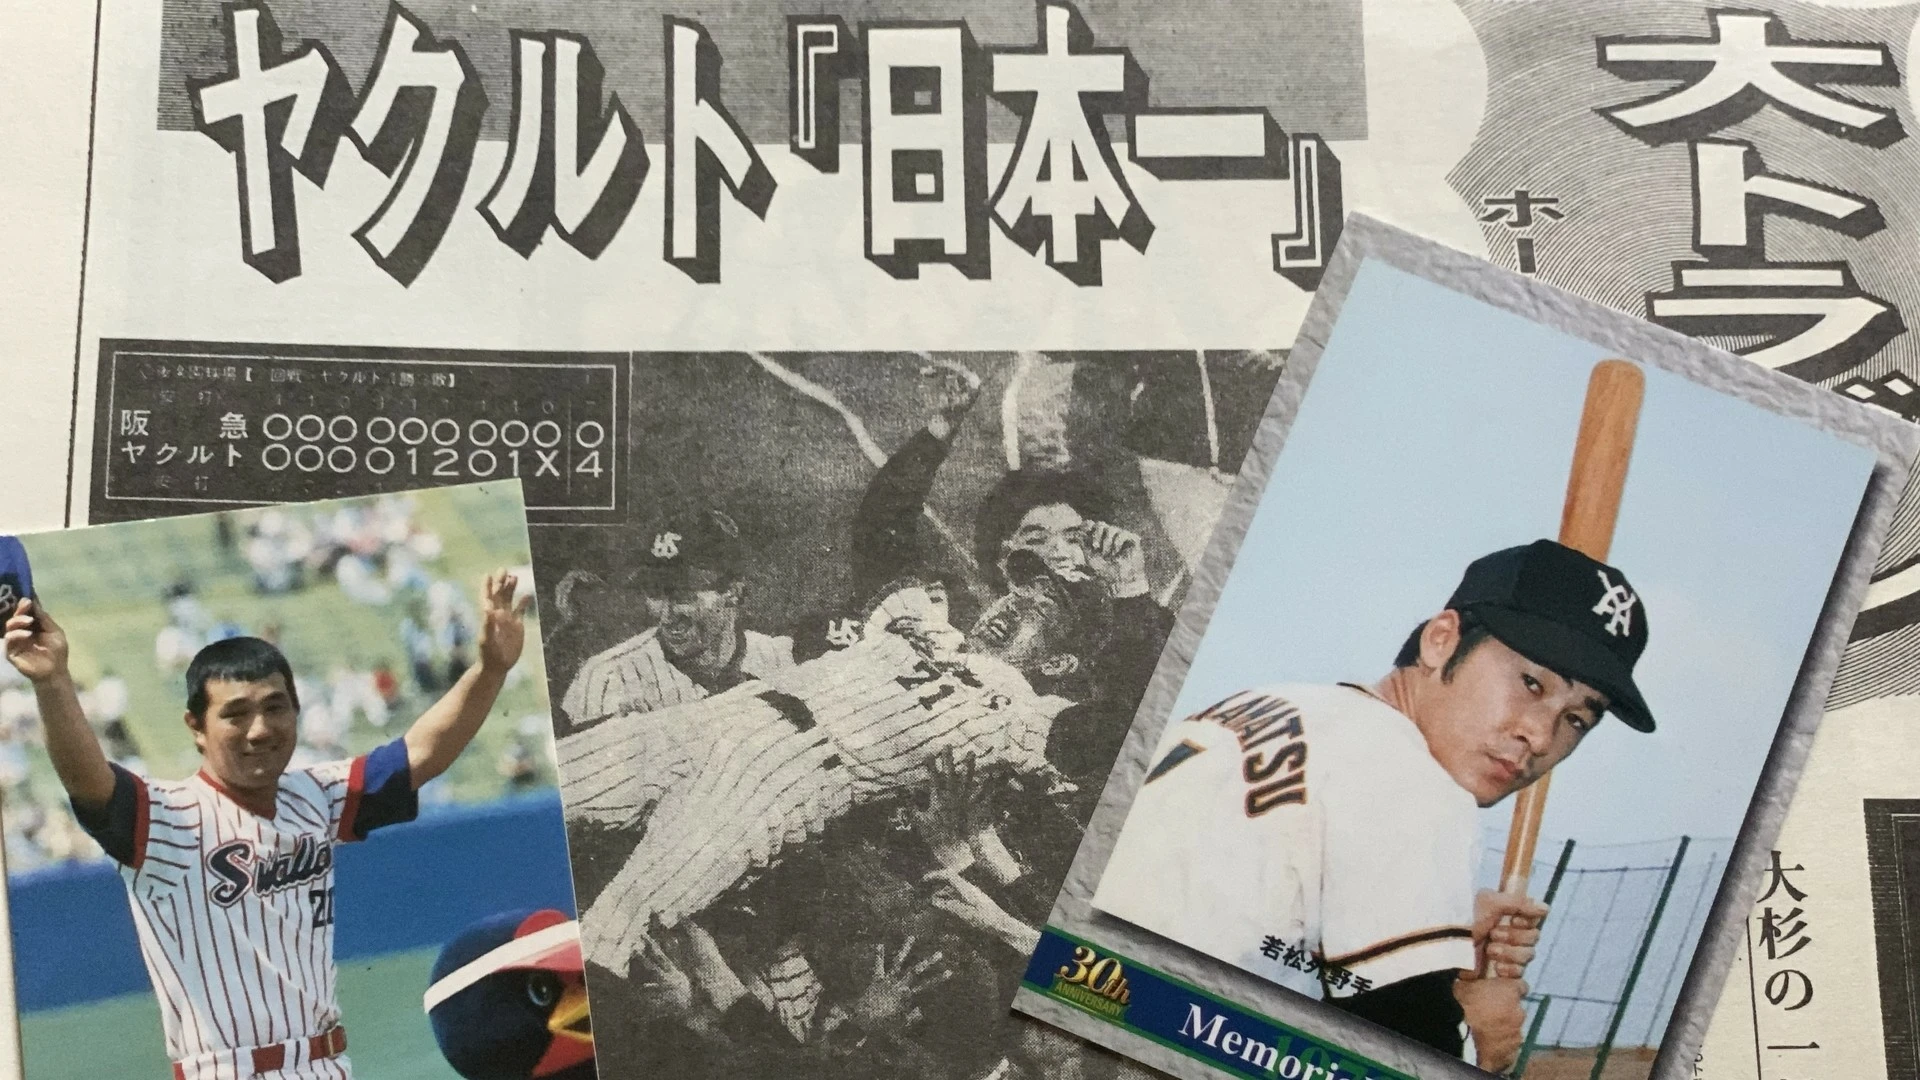 2010年 三冠王 沢村賞 記念ポスターカード - 使用済切手/官製はがき